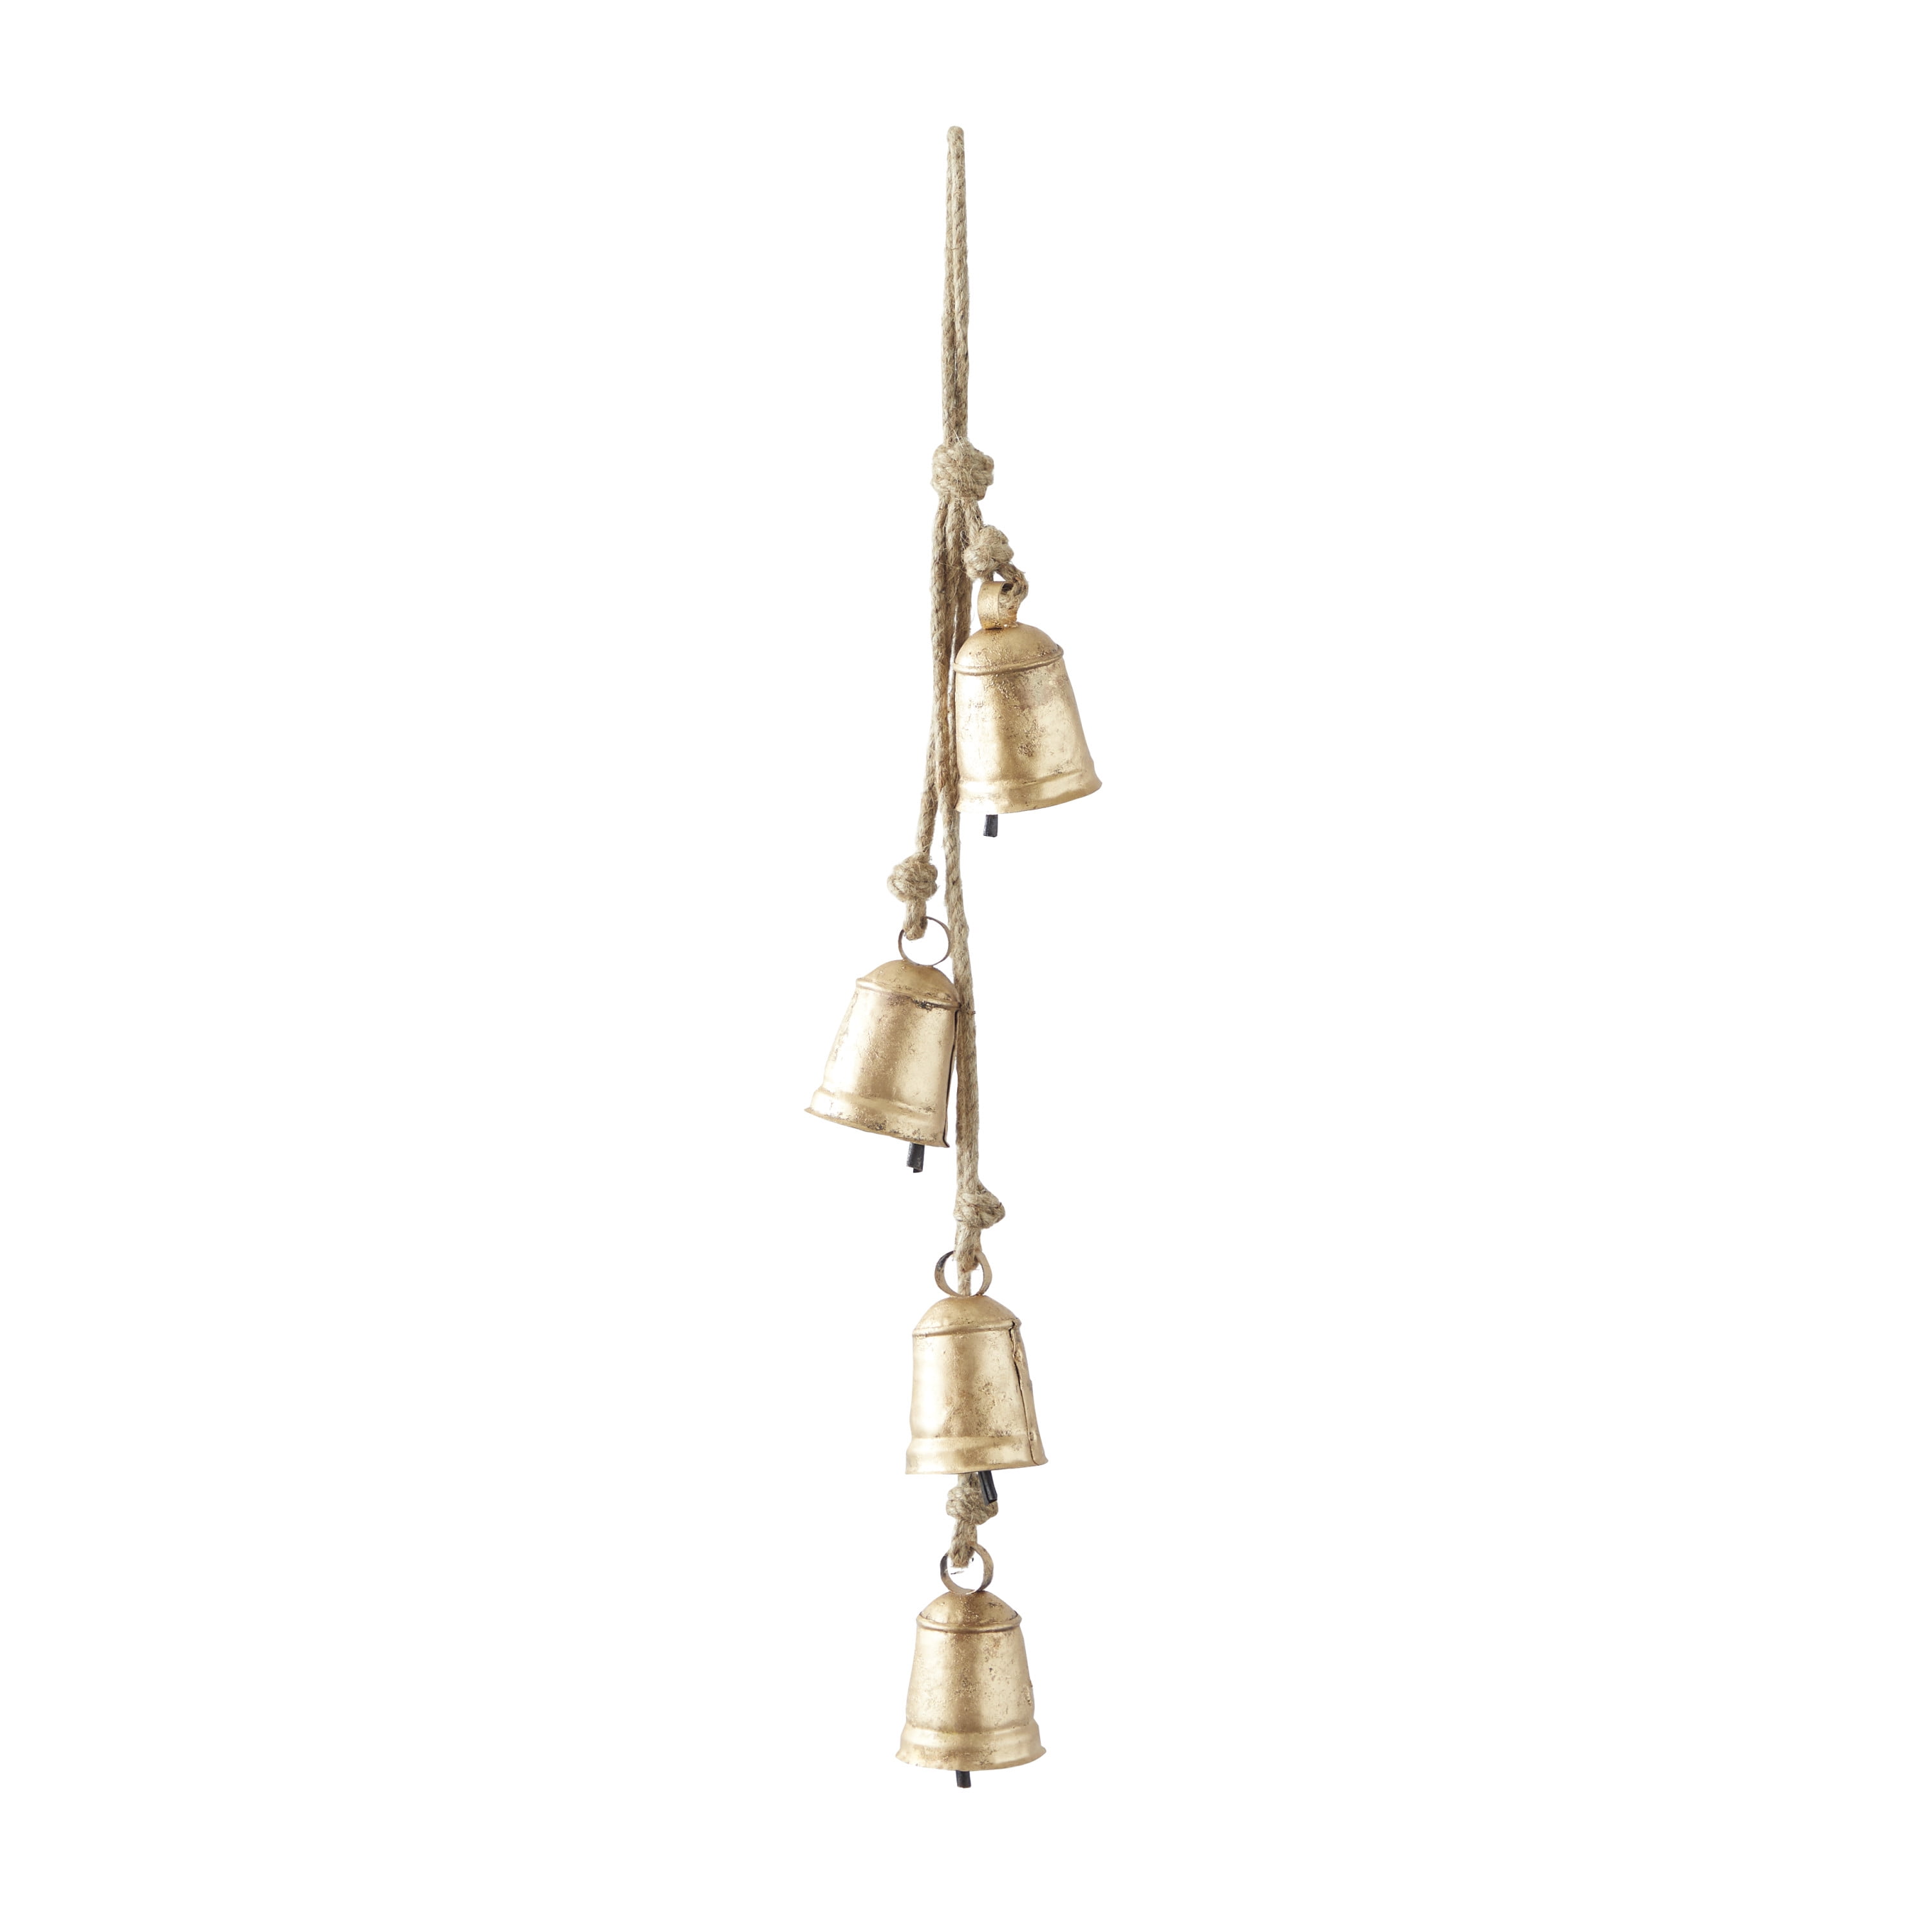 Vintage Bells Hemp Rope Wind Chimes Decorative Cow Bells - Temu